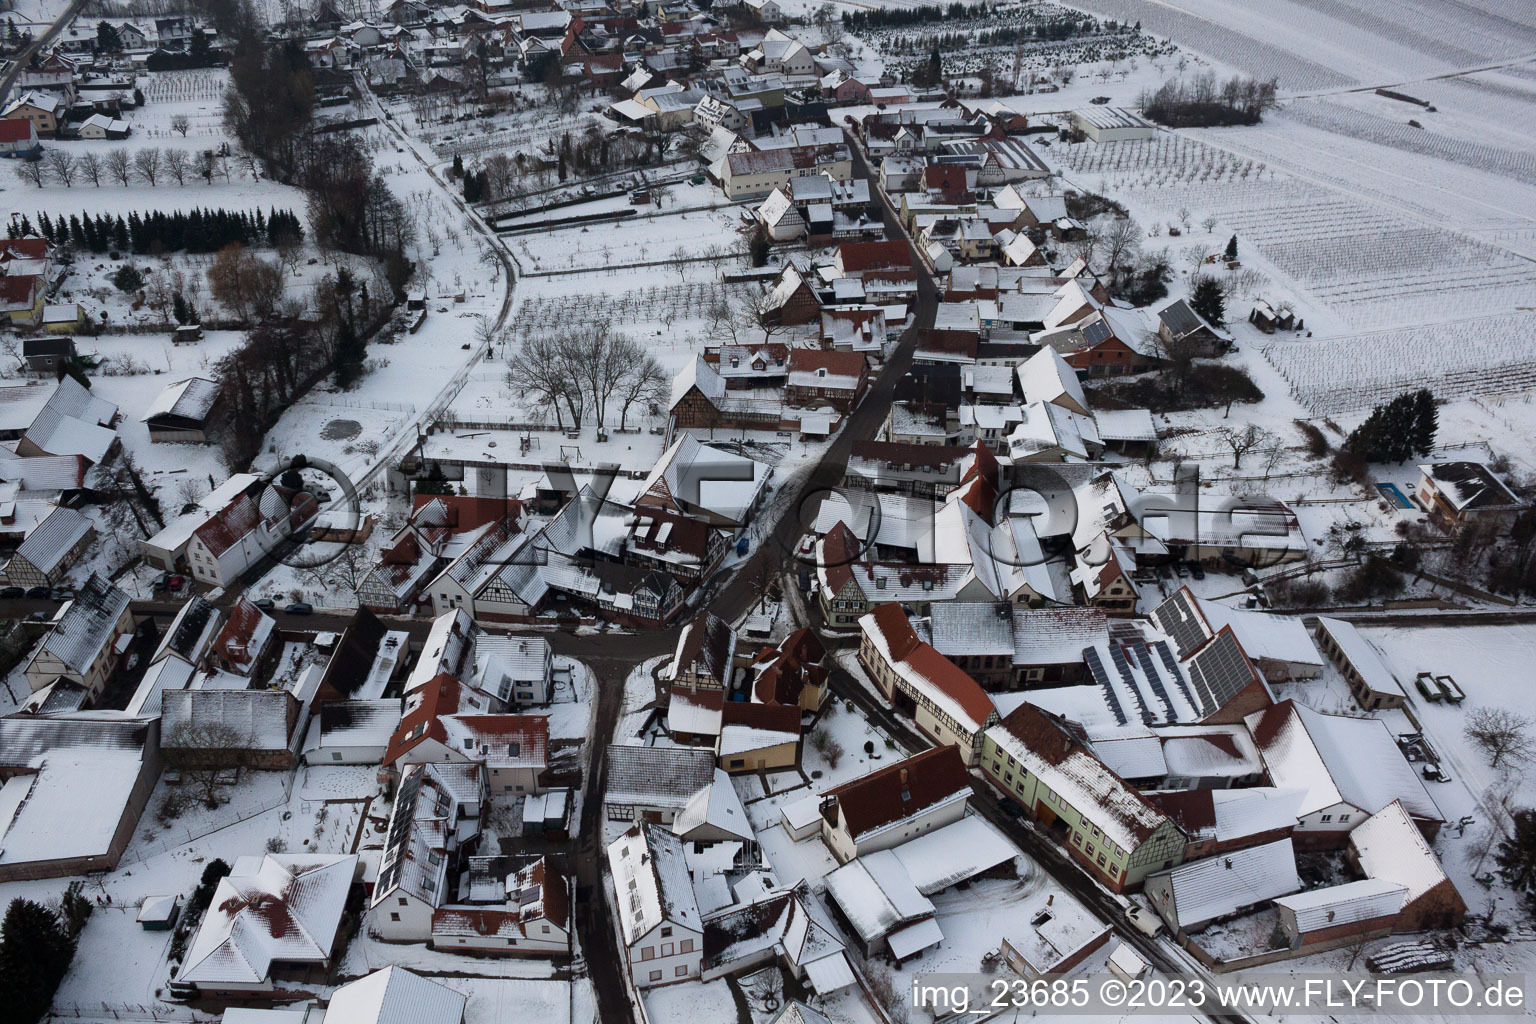 Dierbach dans le département Rhénanie-Palatinat, Allemagne vue d'en haut